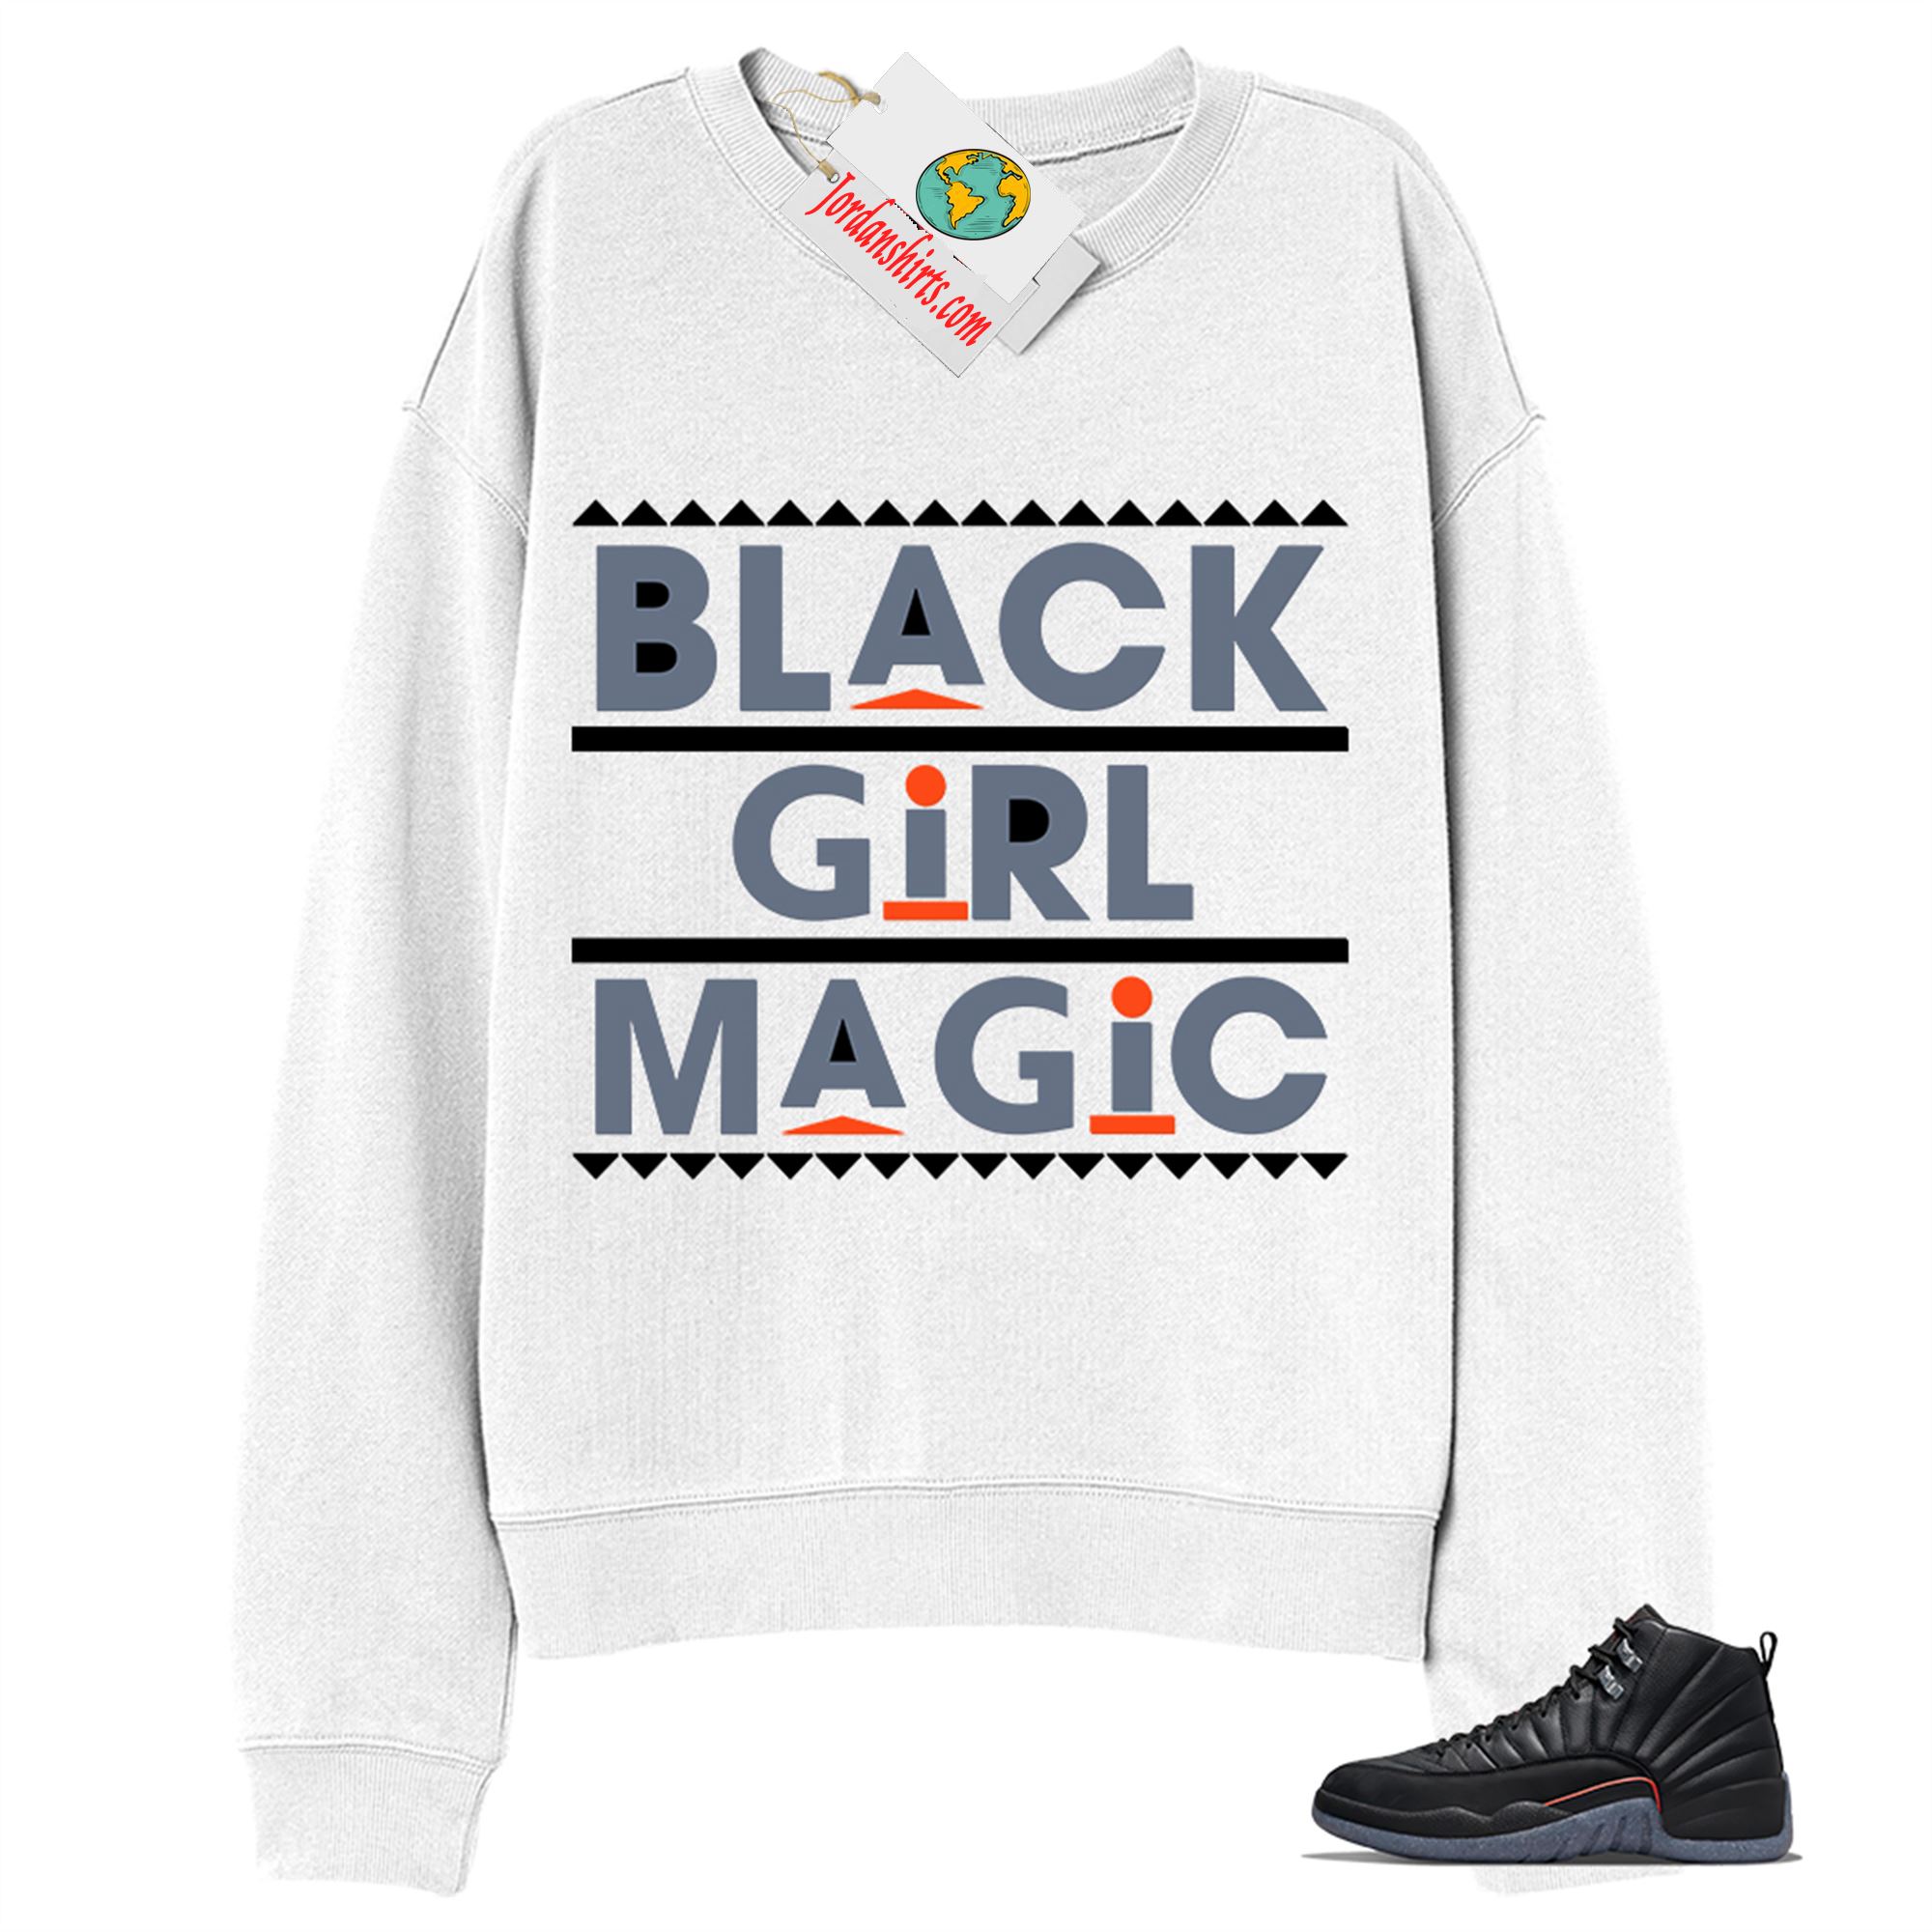 Jordan 12 Sweatshirt, Black Girl Magic White Sweatshirt Air Jordan 12 Utility Grind 12s Plus Size Up To 5xl